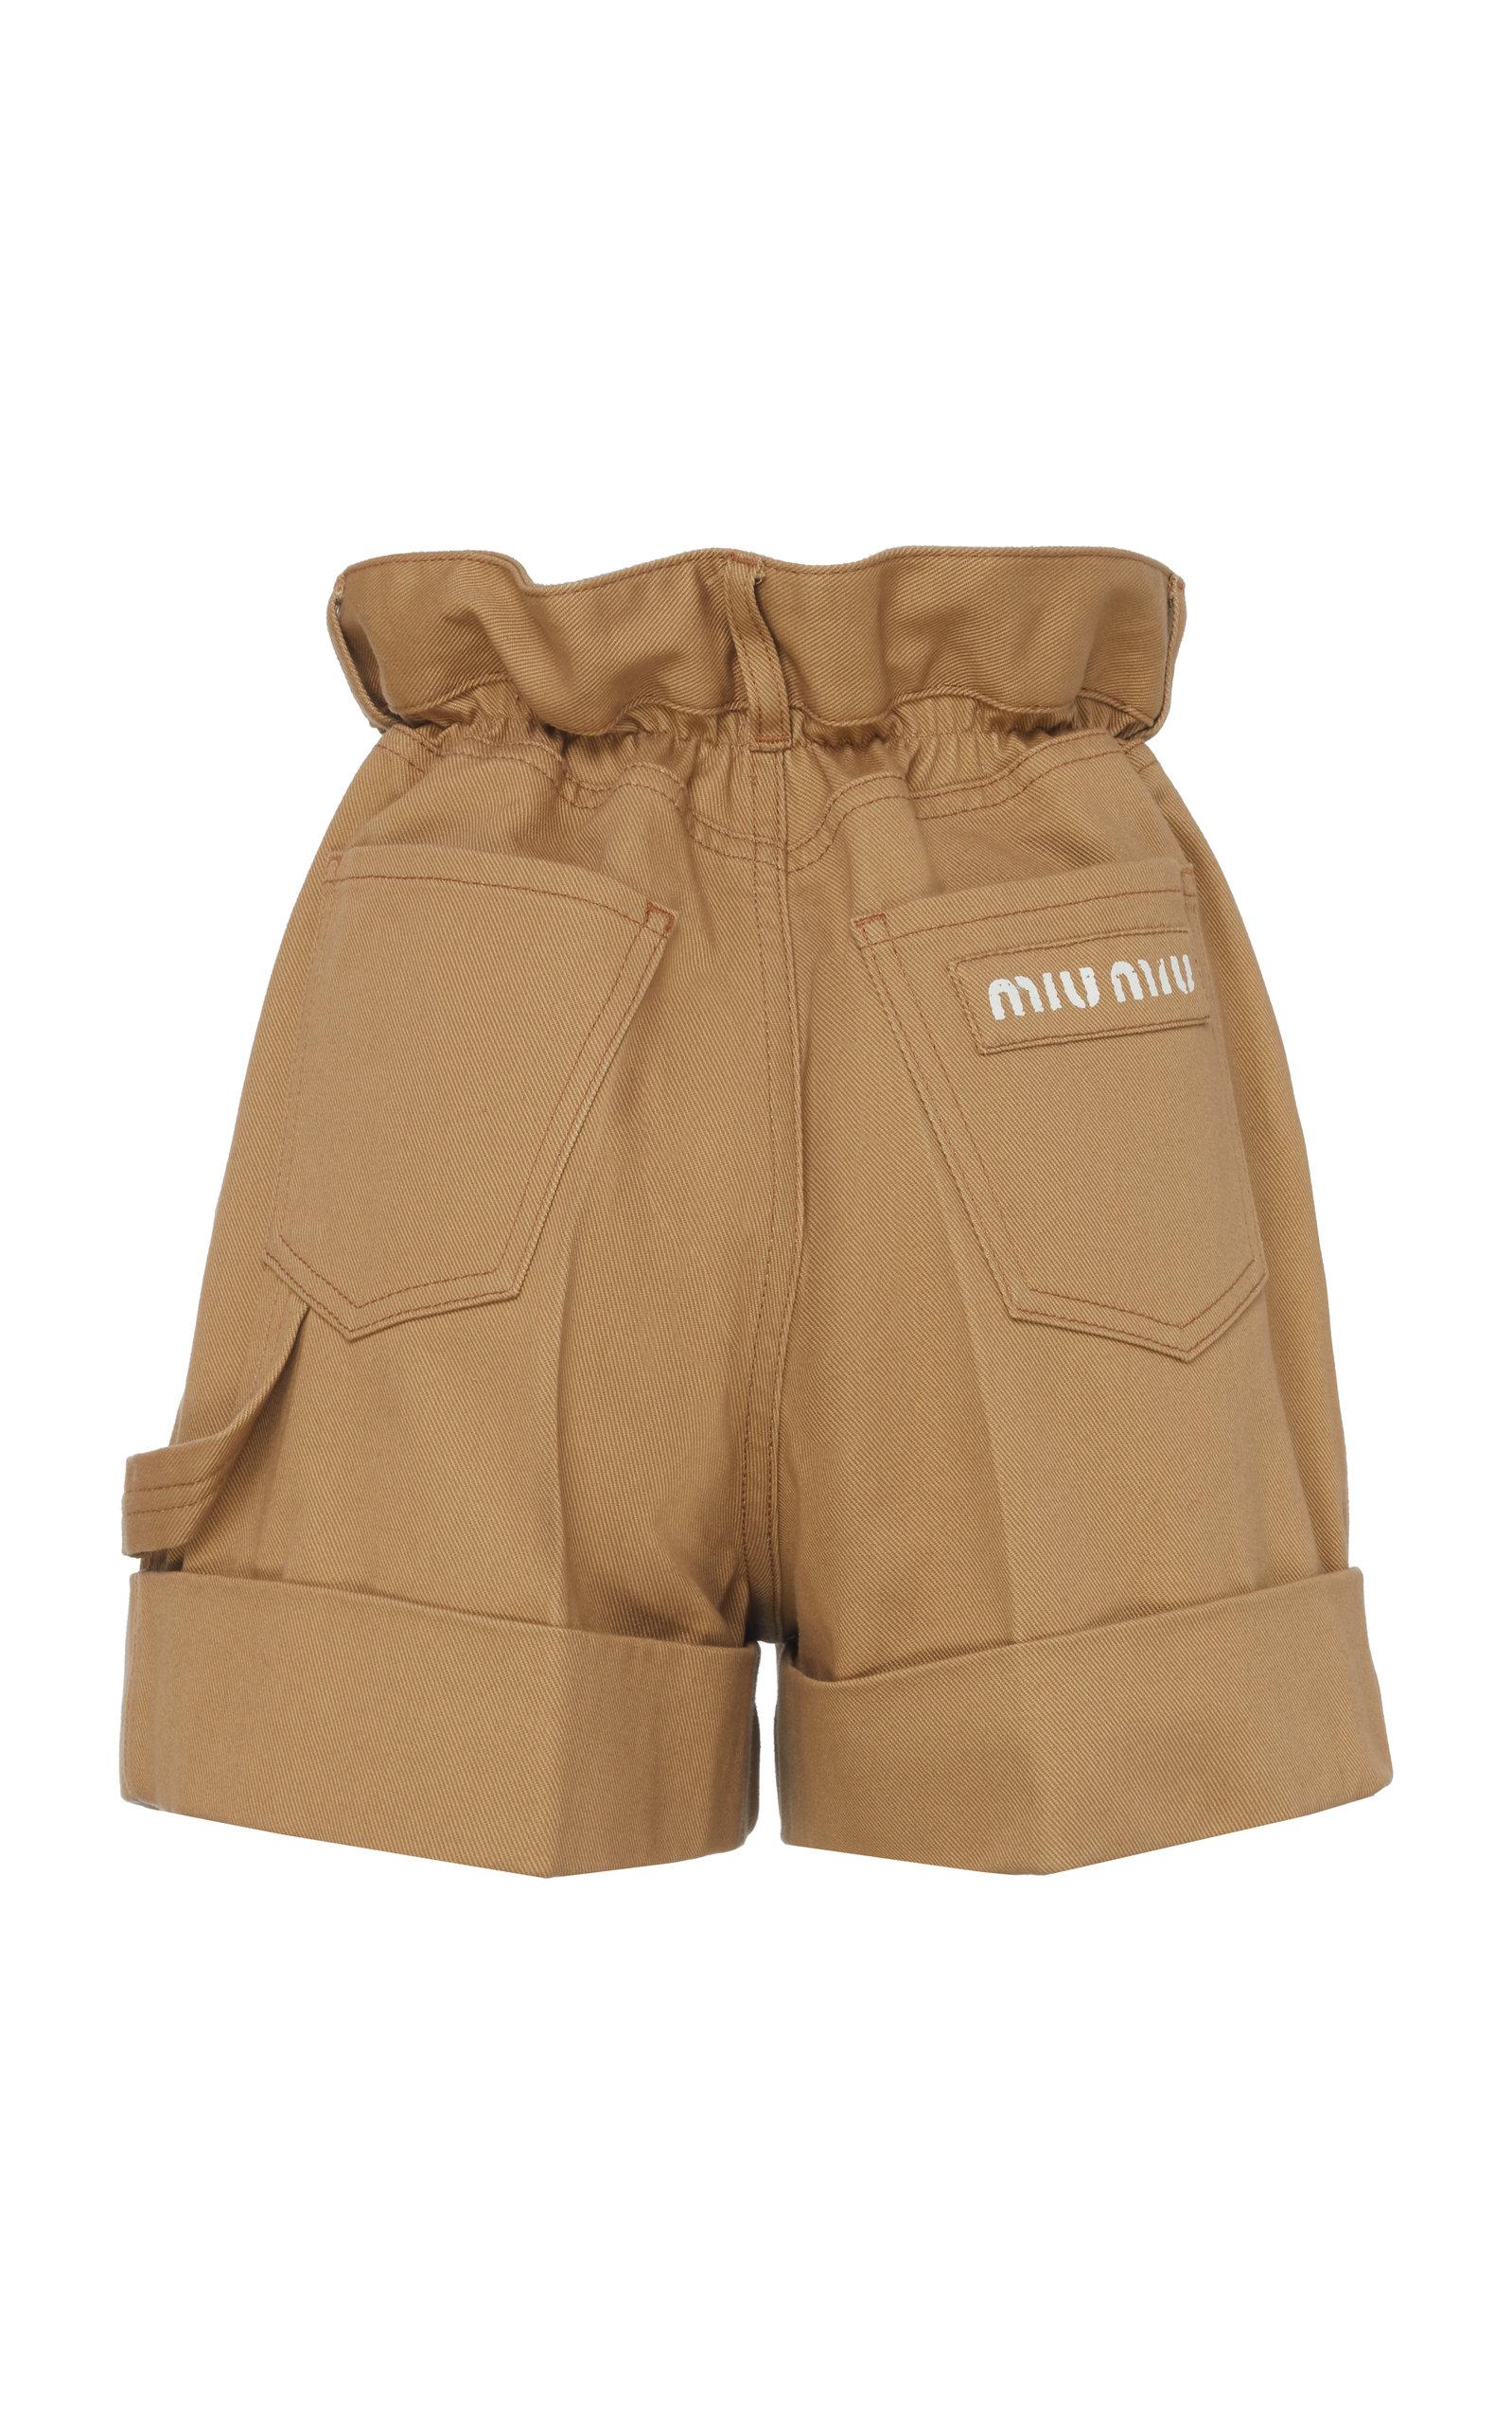 Miu Miu Cuffed Shorts